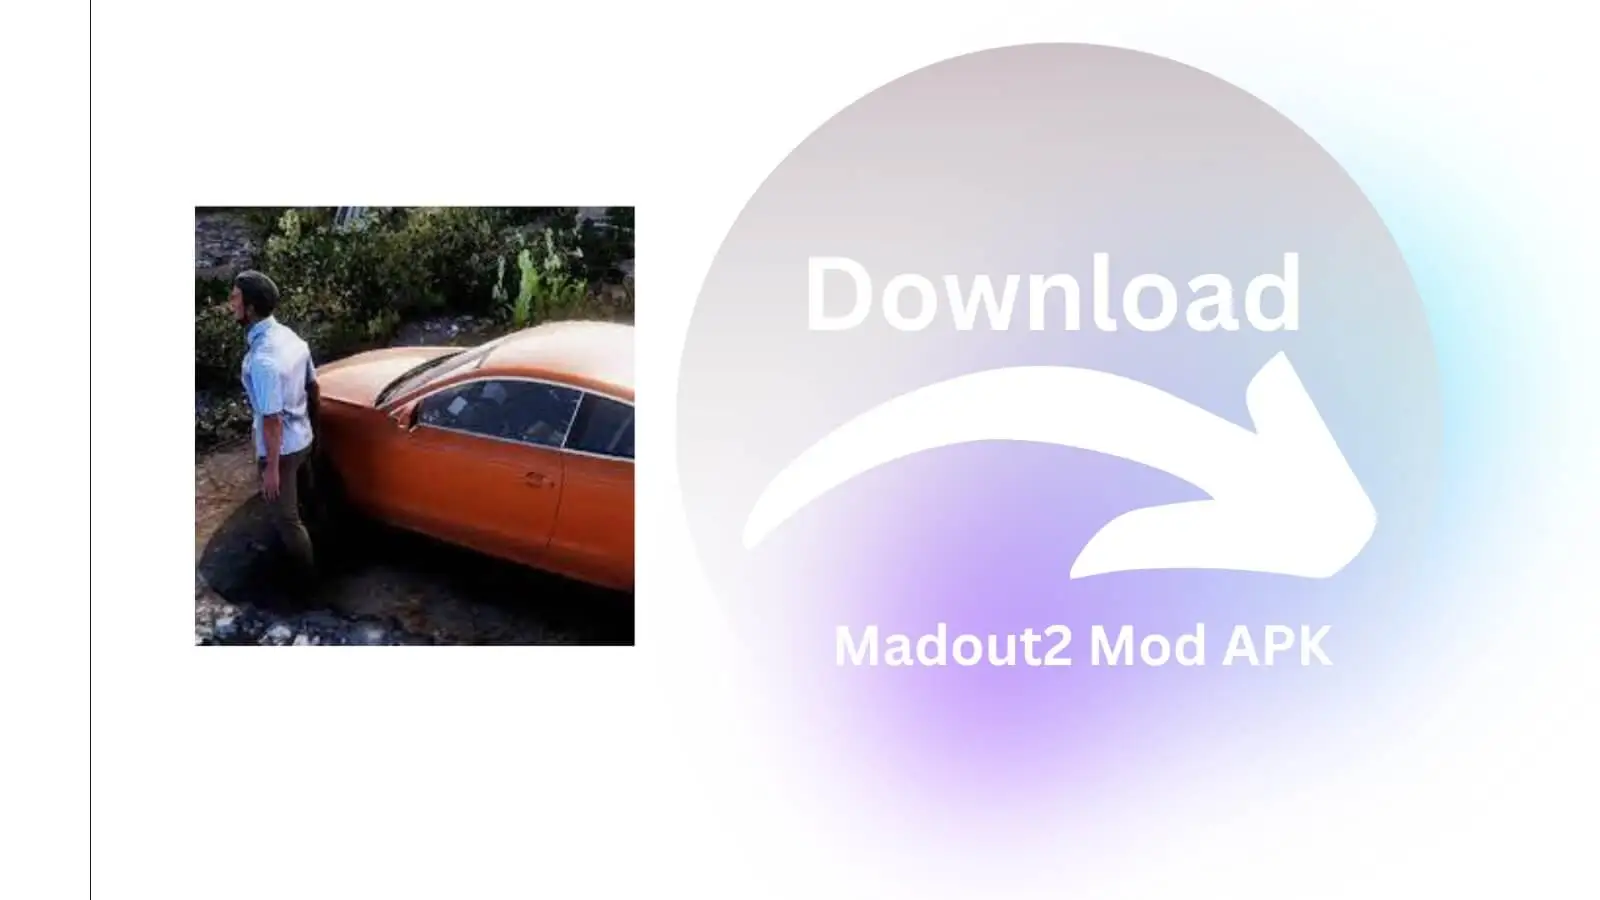 Madout2 Mod APK